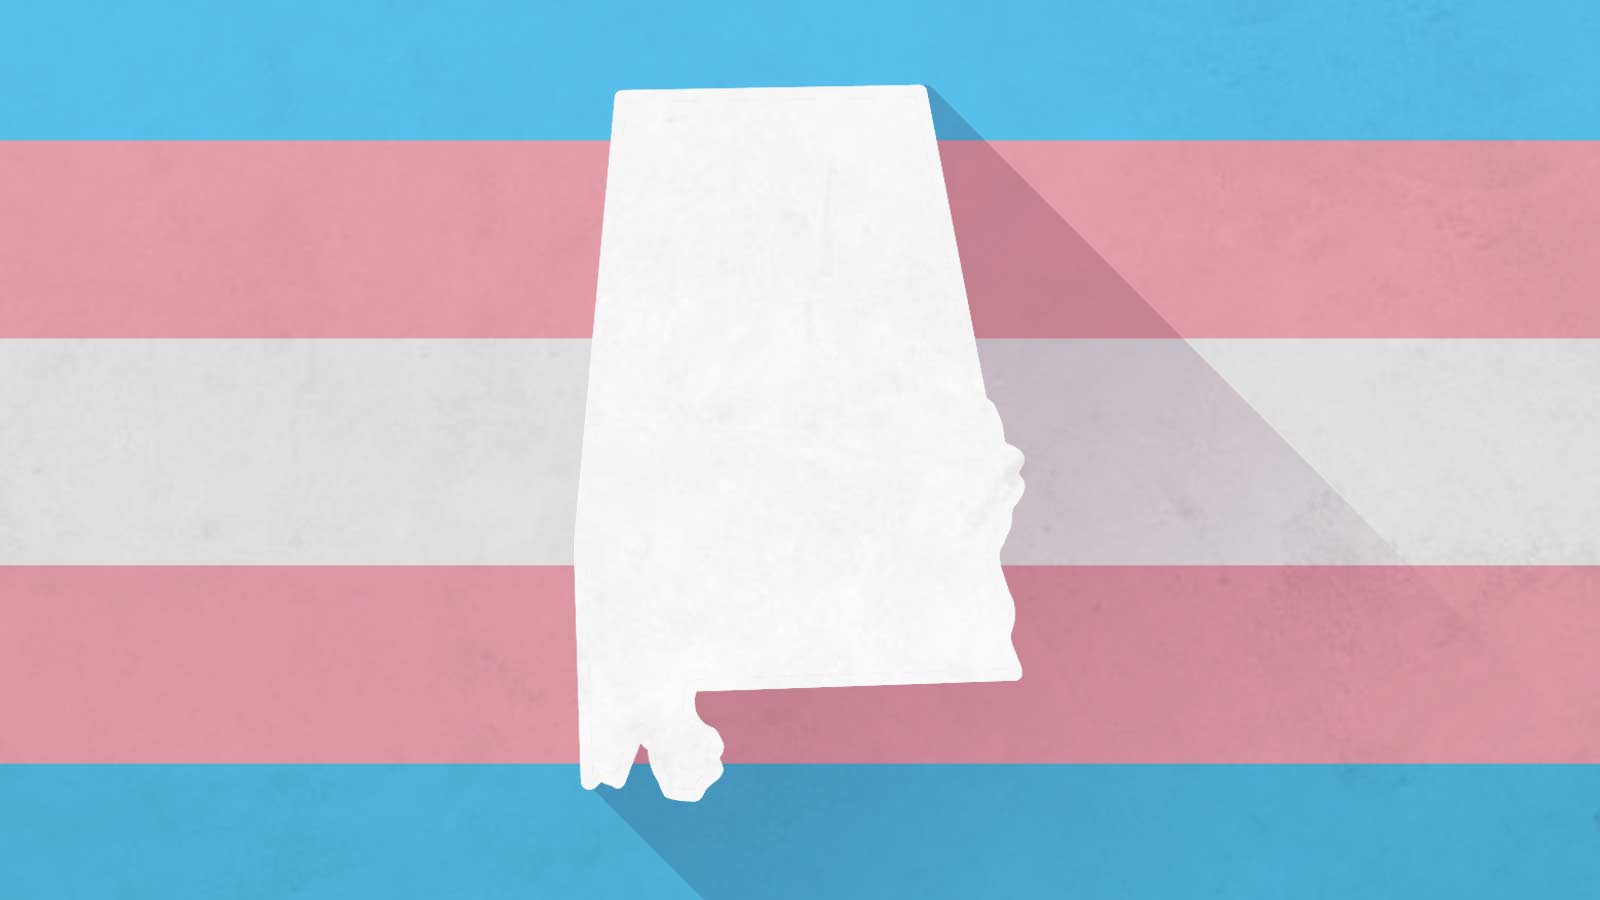 Alabama state outline against trans flag